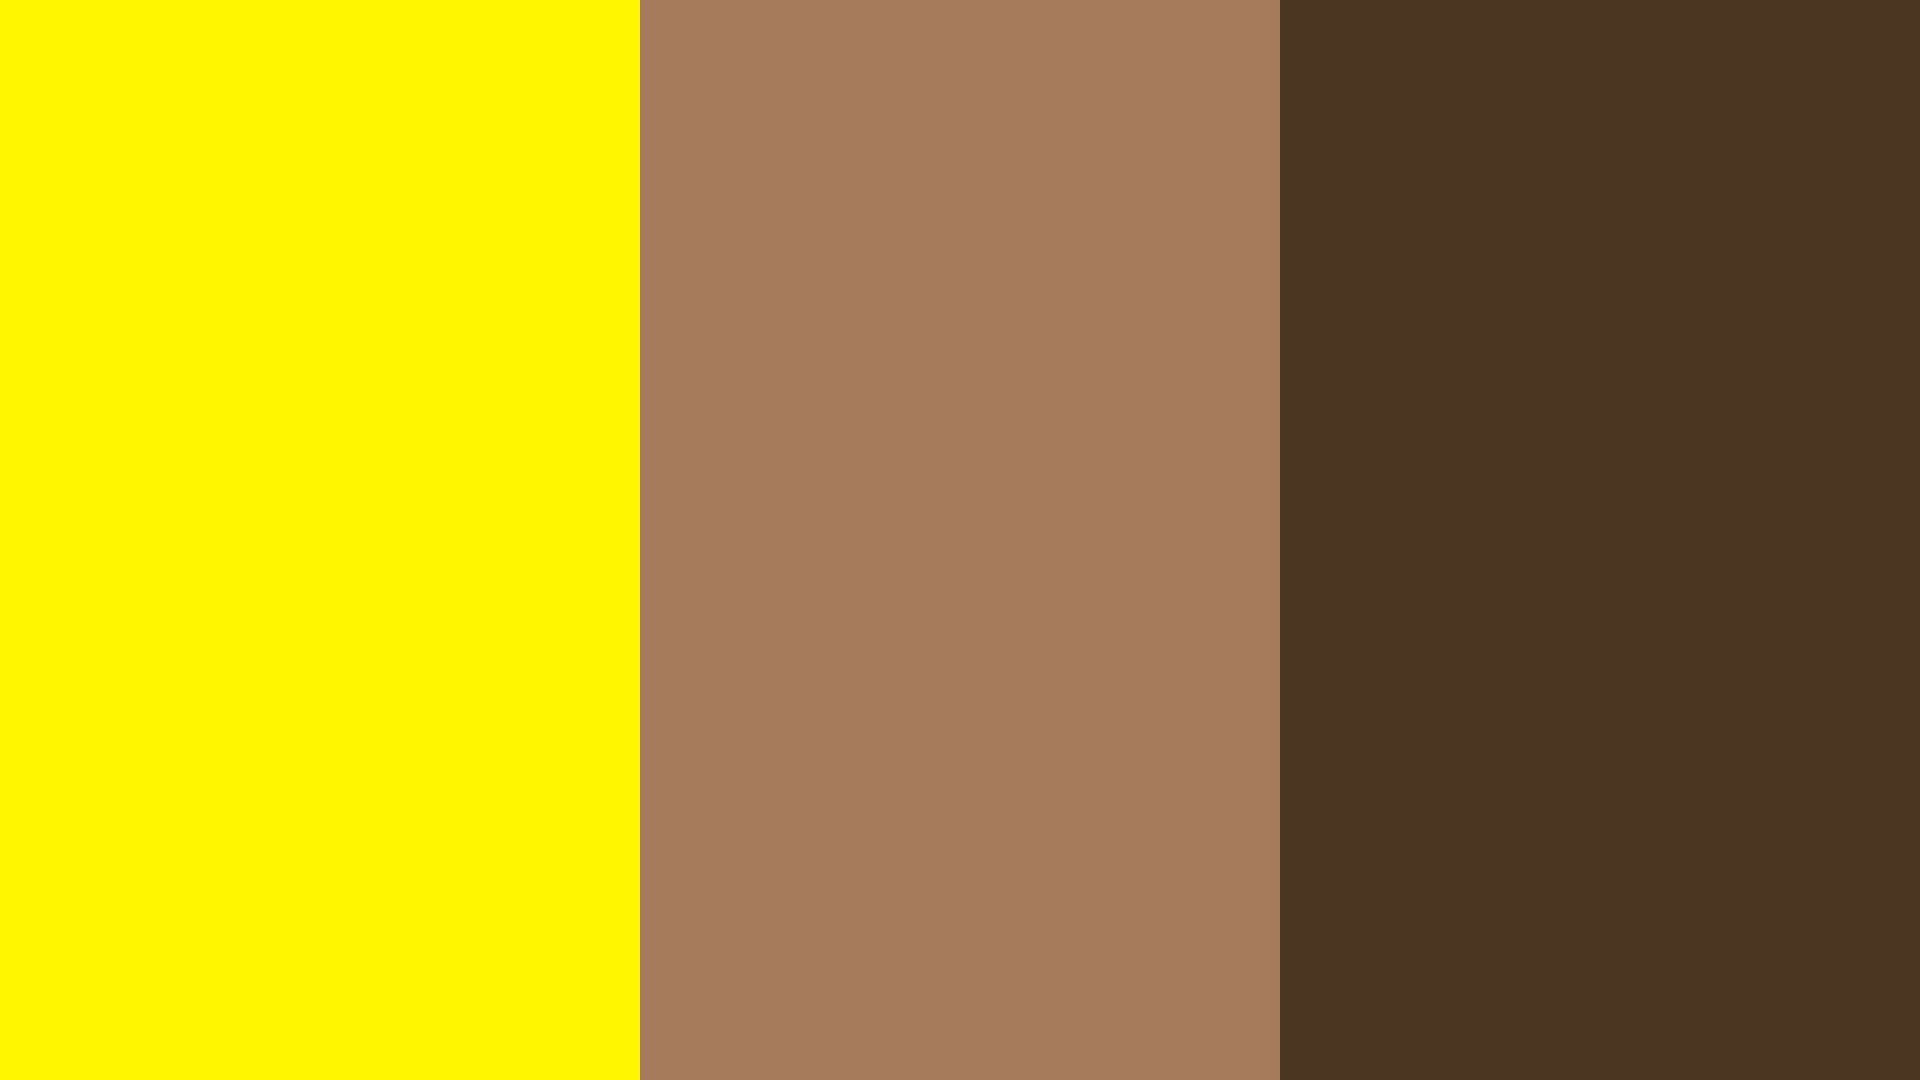 1920x1080-cadmium-yellow-cafe-au-lait-cafe-noir-three-color-background.jpg